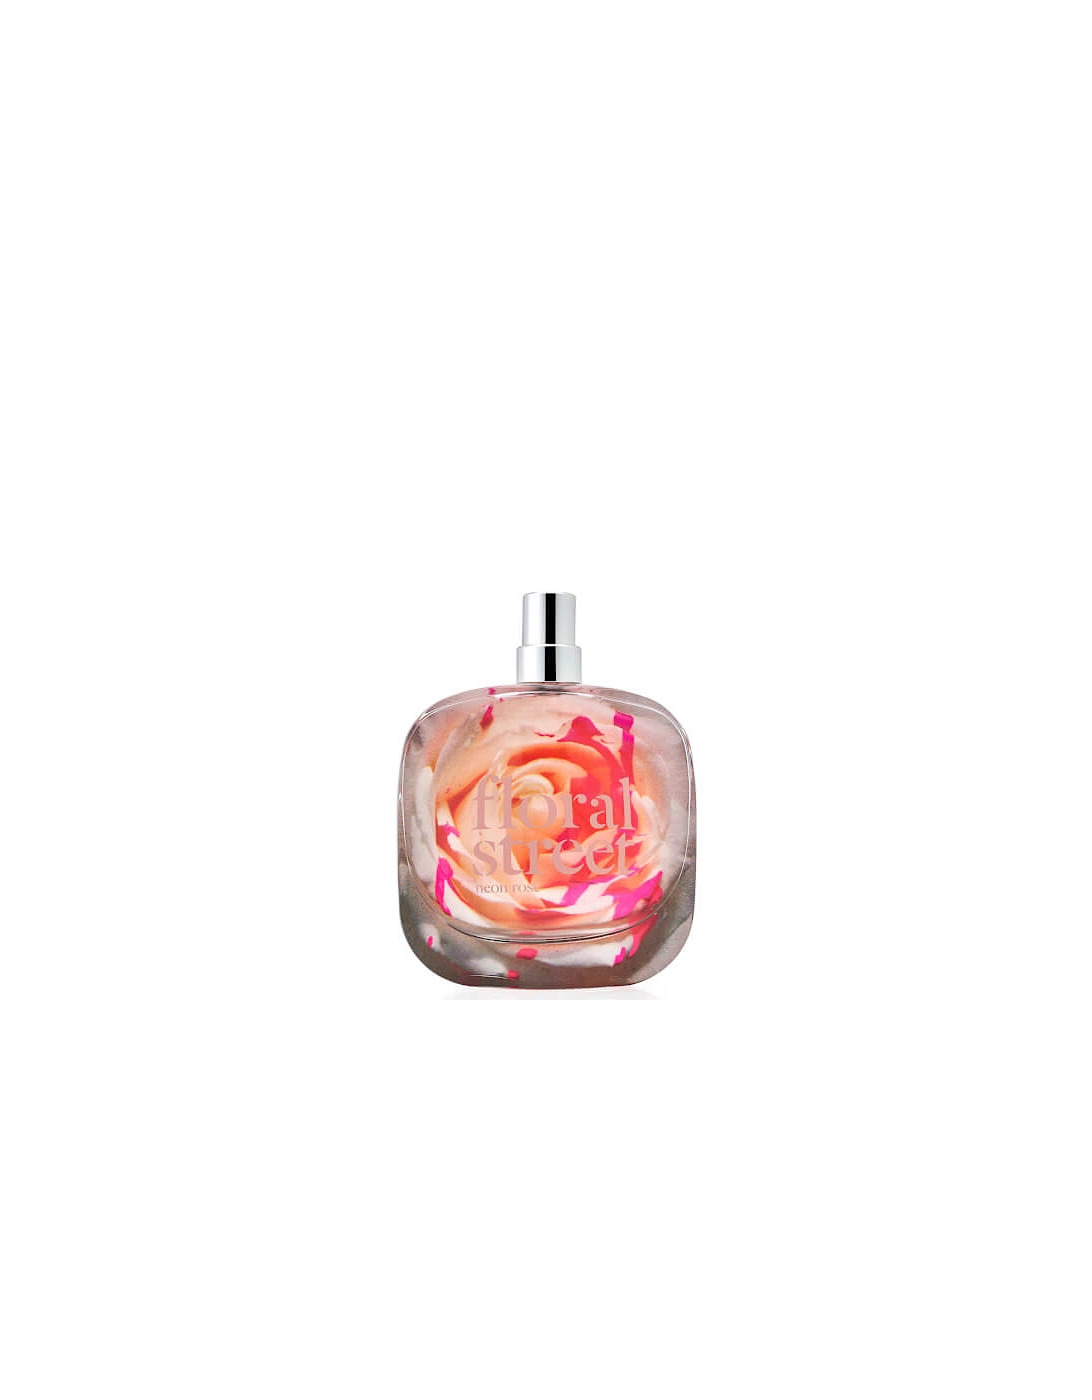 Neon Rose Eau de Parfum 100ml, 2 of 1